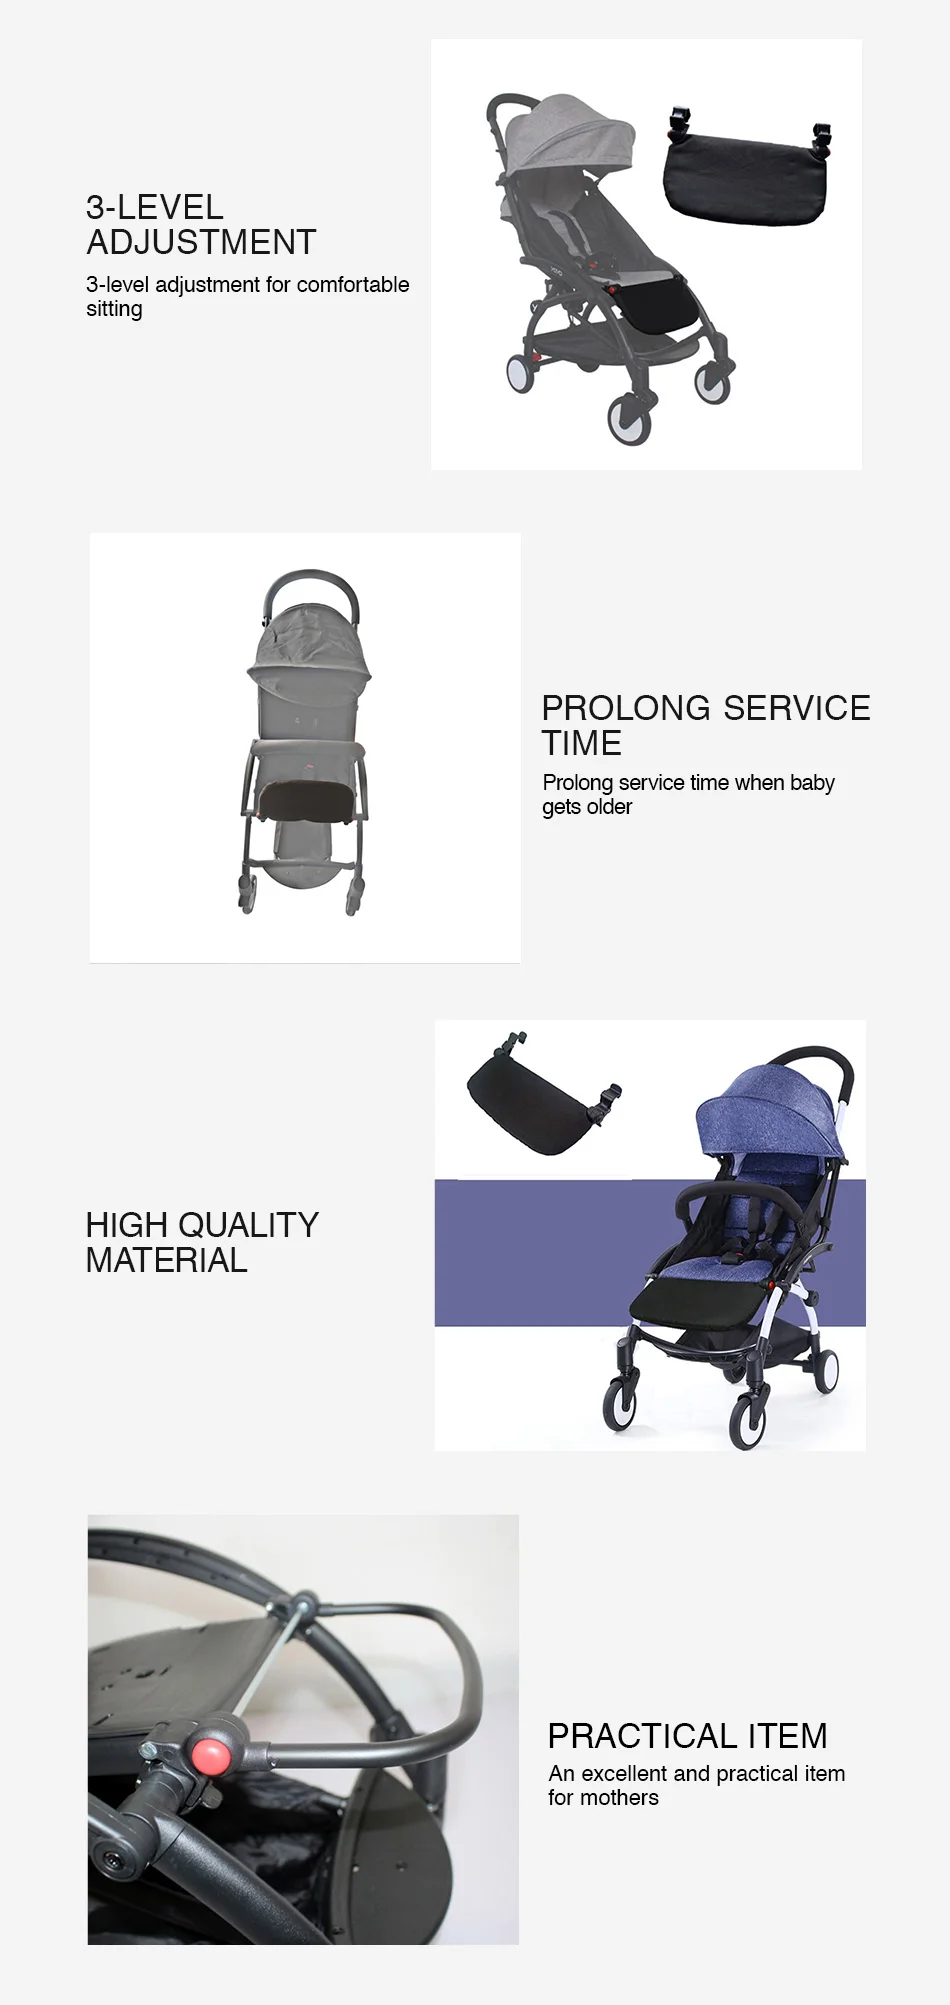 Детская коляска, подставка для ног, расширенная подножка, пластиковое сиденье, педали, многофункциональные крючки для младенцев, детская коляска для перевозки, аксессуары